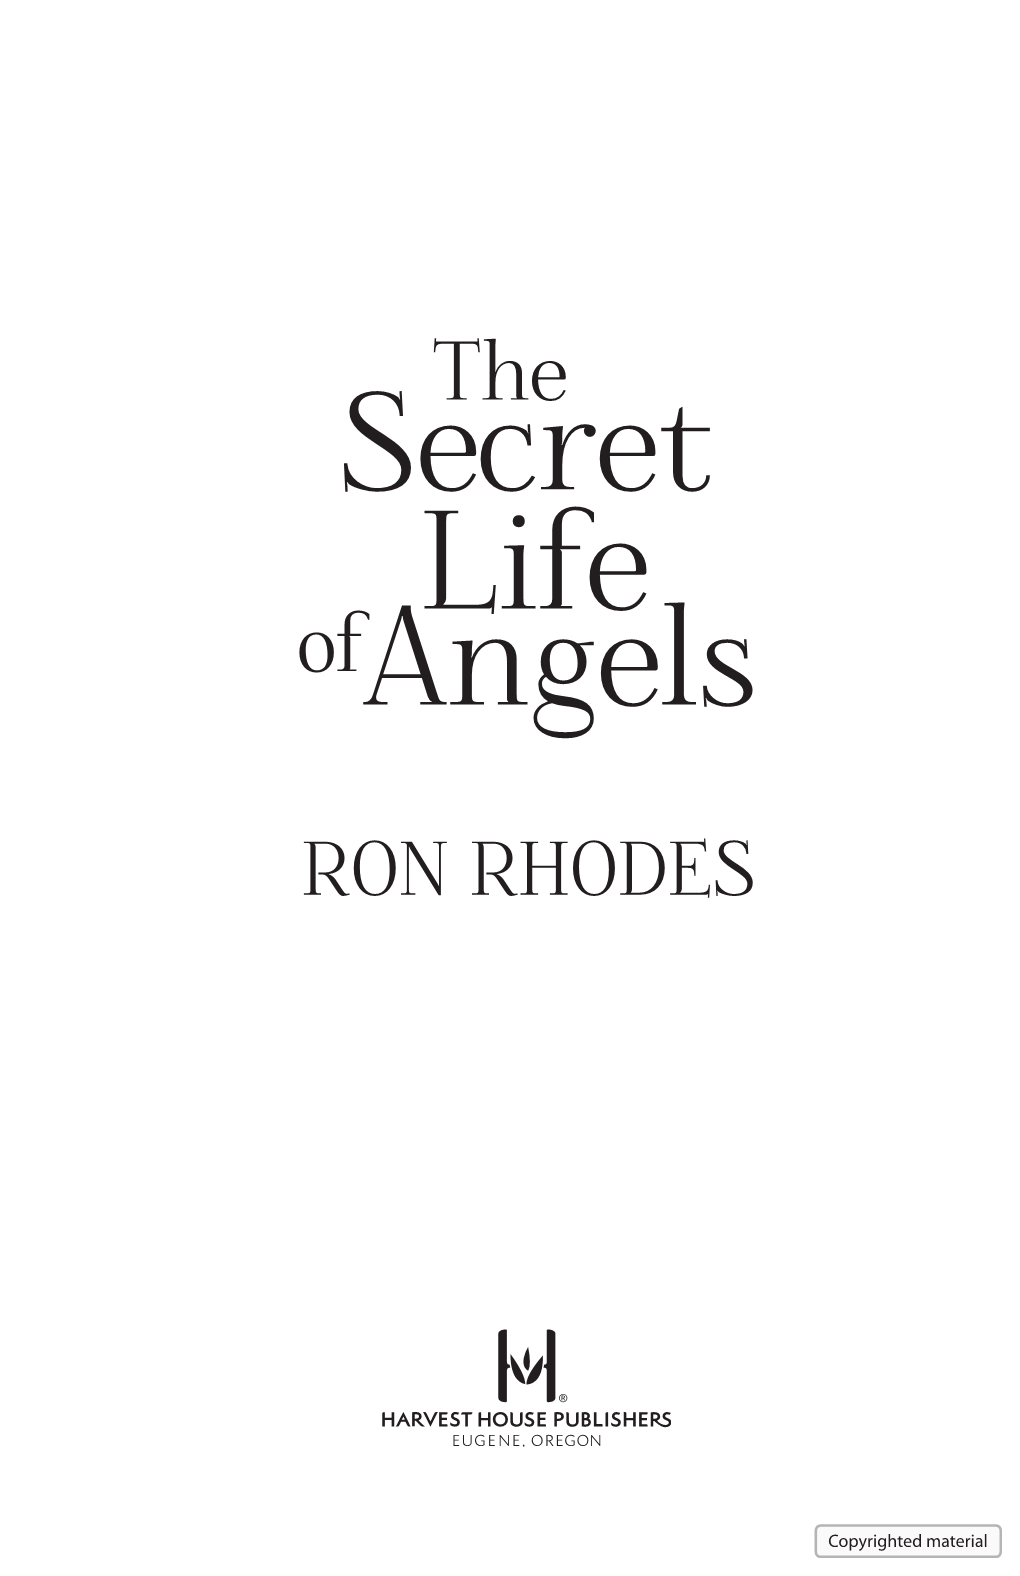 The Secret Life of Angels